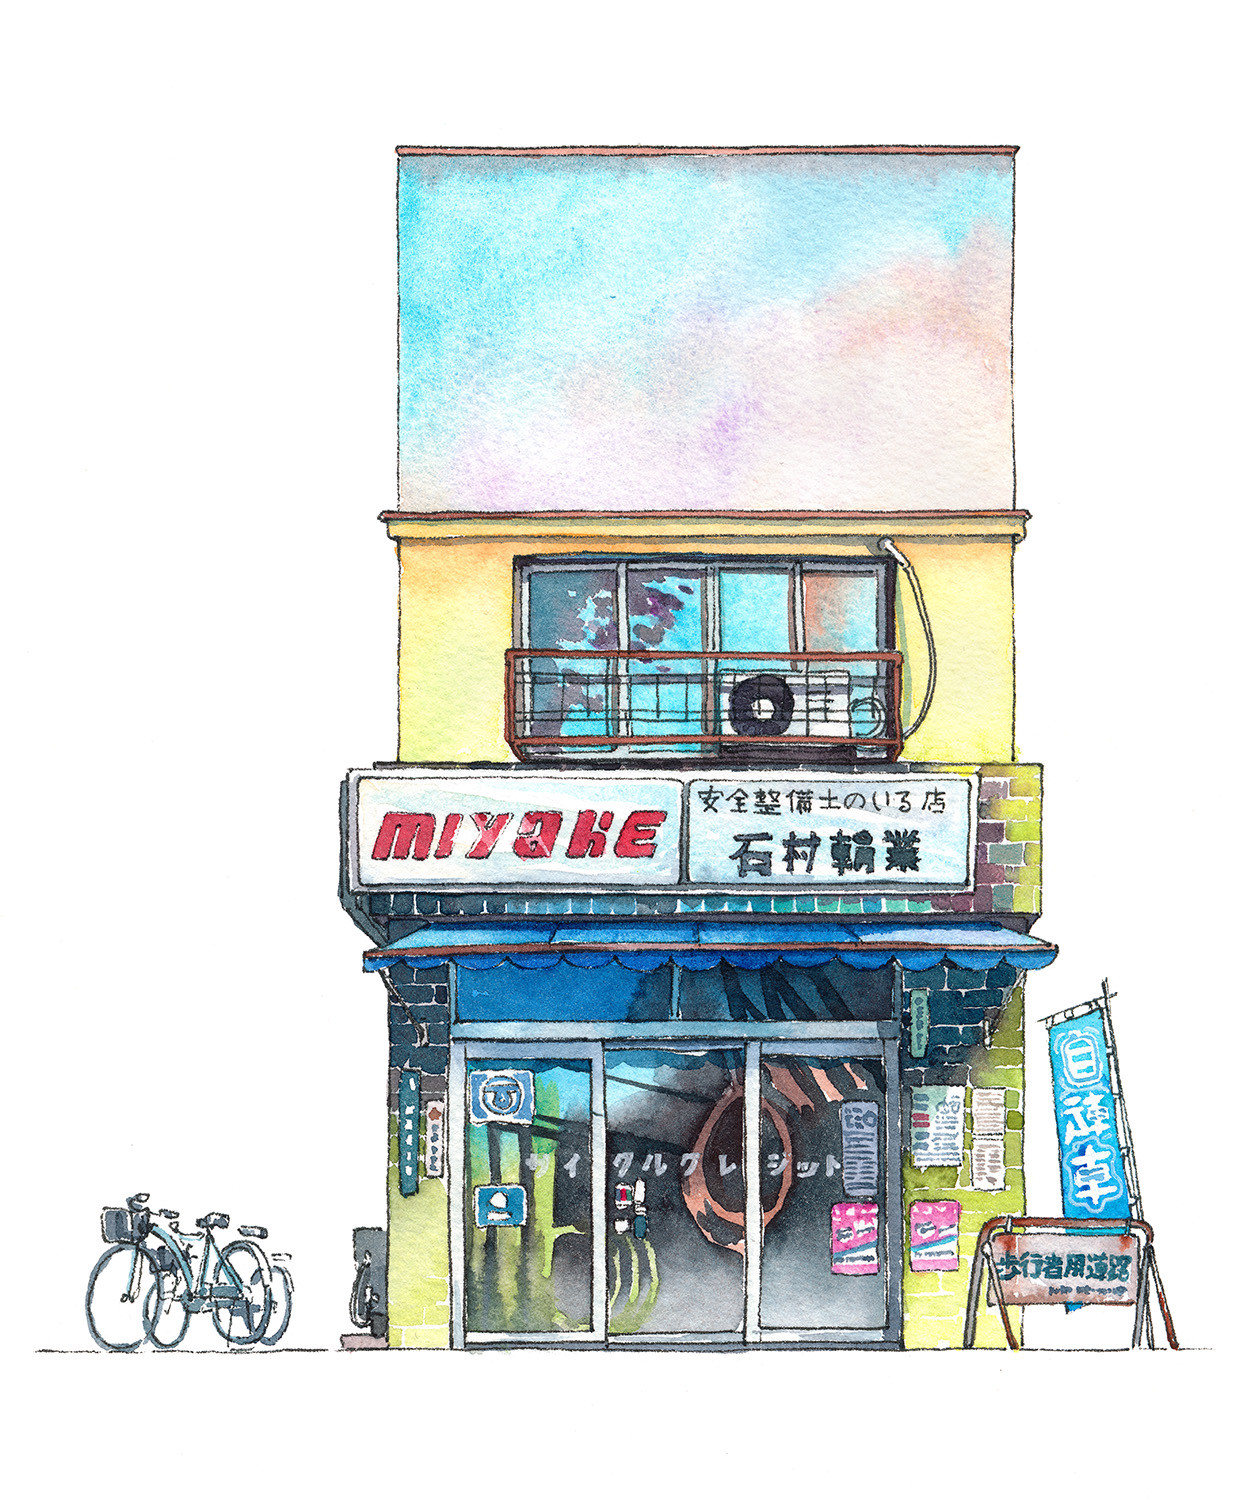 Рисунки уличных японских магазинов